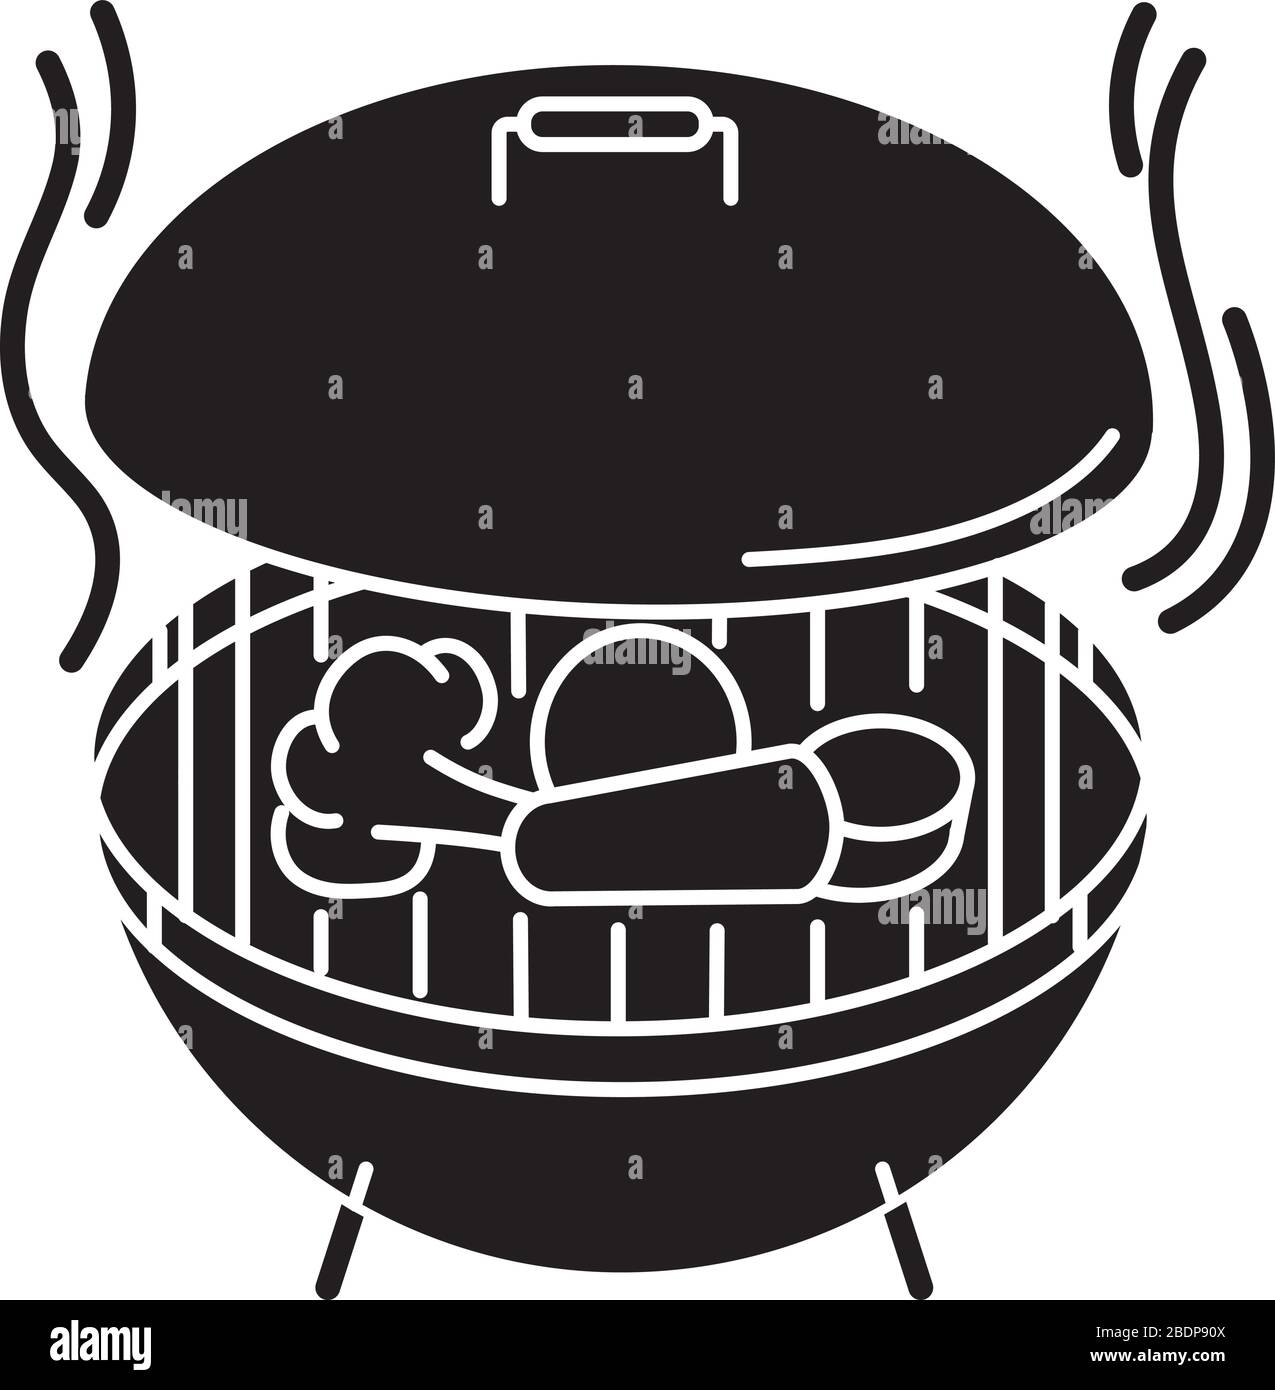 Icône de glyphe noir de cuisson. Processus de préparation du barbecue, cuisine sur grille chauffée. Méthode culinaire, symbole de silhouette de pique-nique sur l'espace blanc Illustration de Vecteur